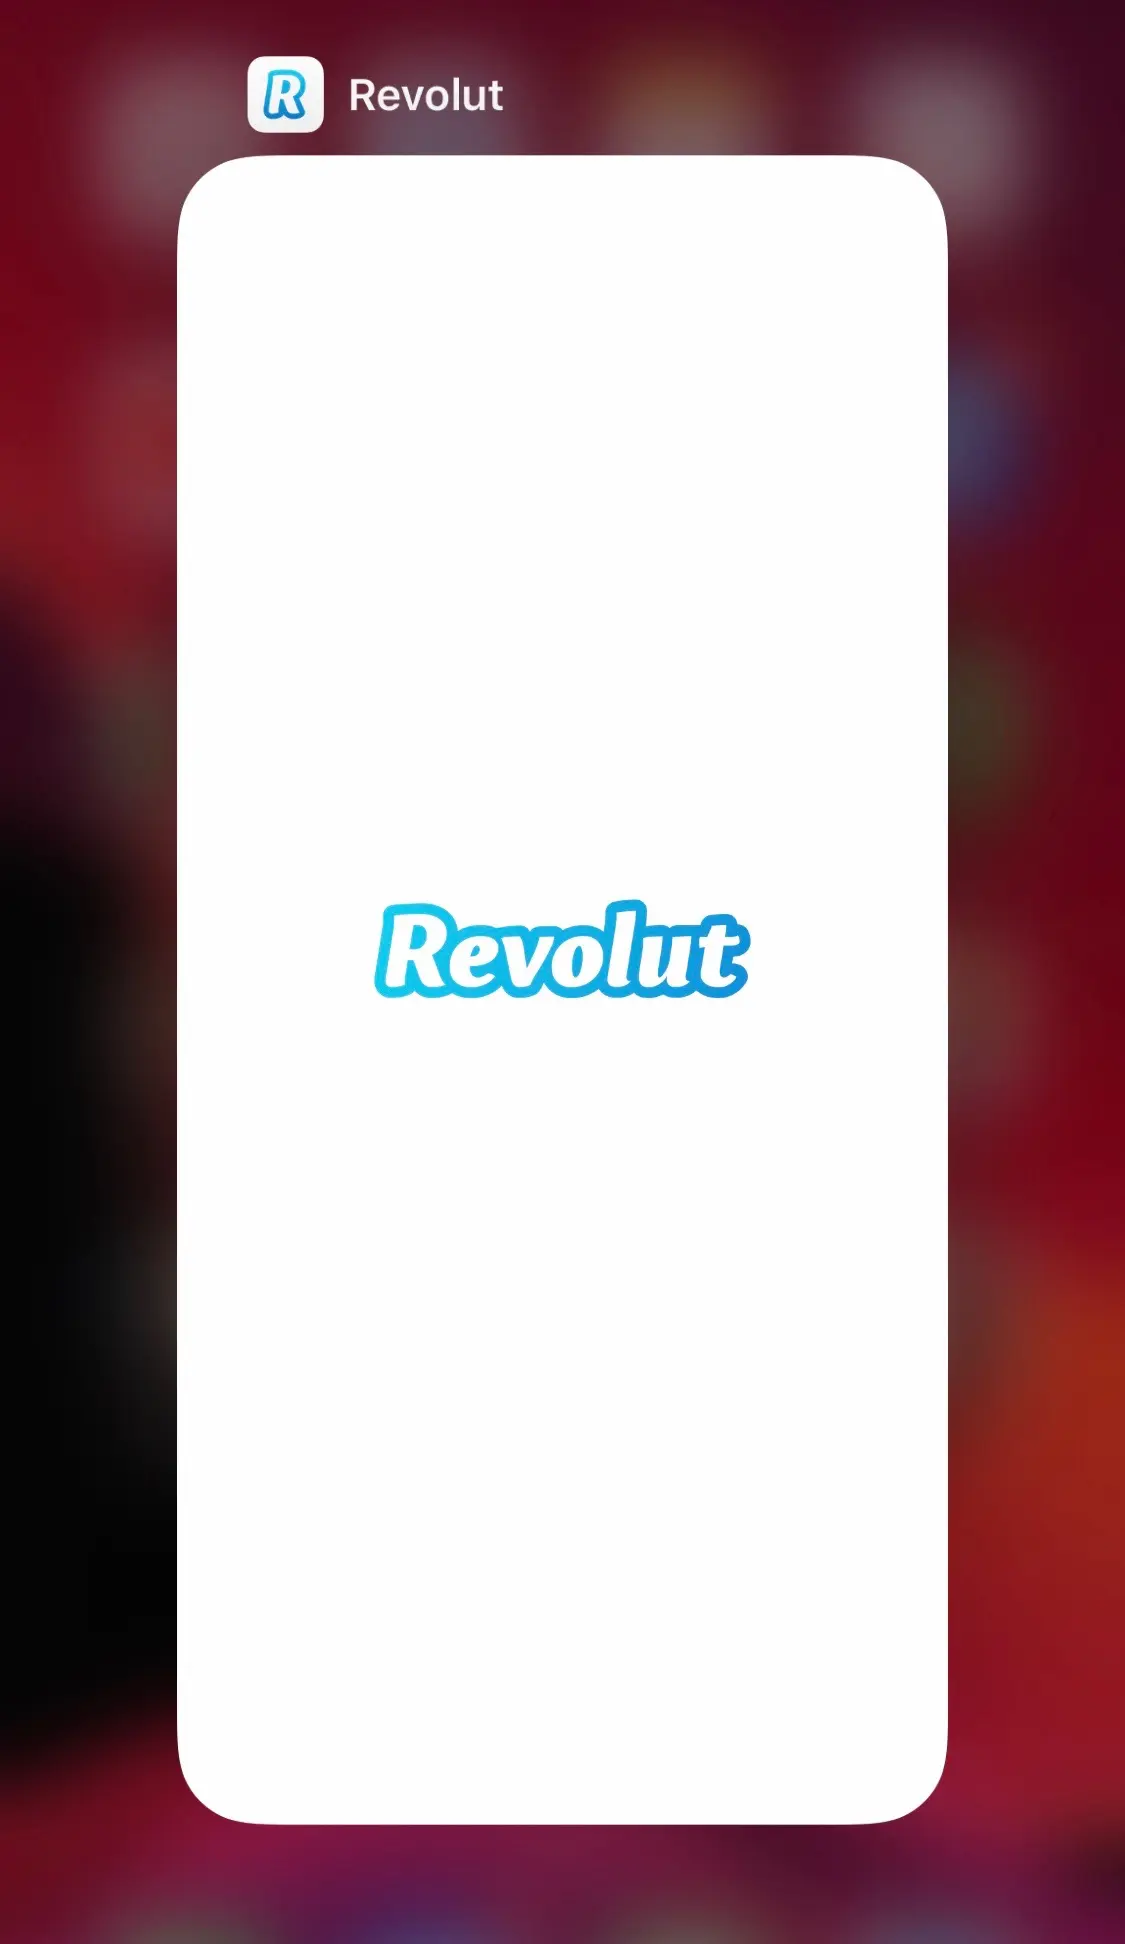 Revolut ne fonctionne pas dans iOS 13 (Crash de l'application Revolut) [Comment réparer]